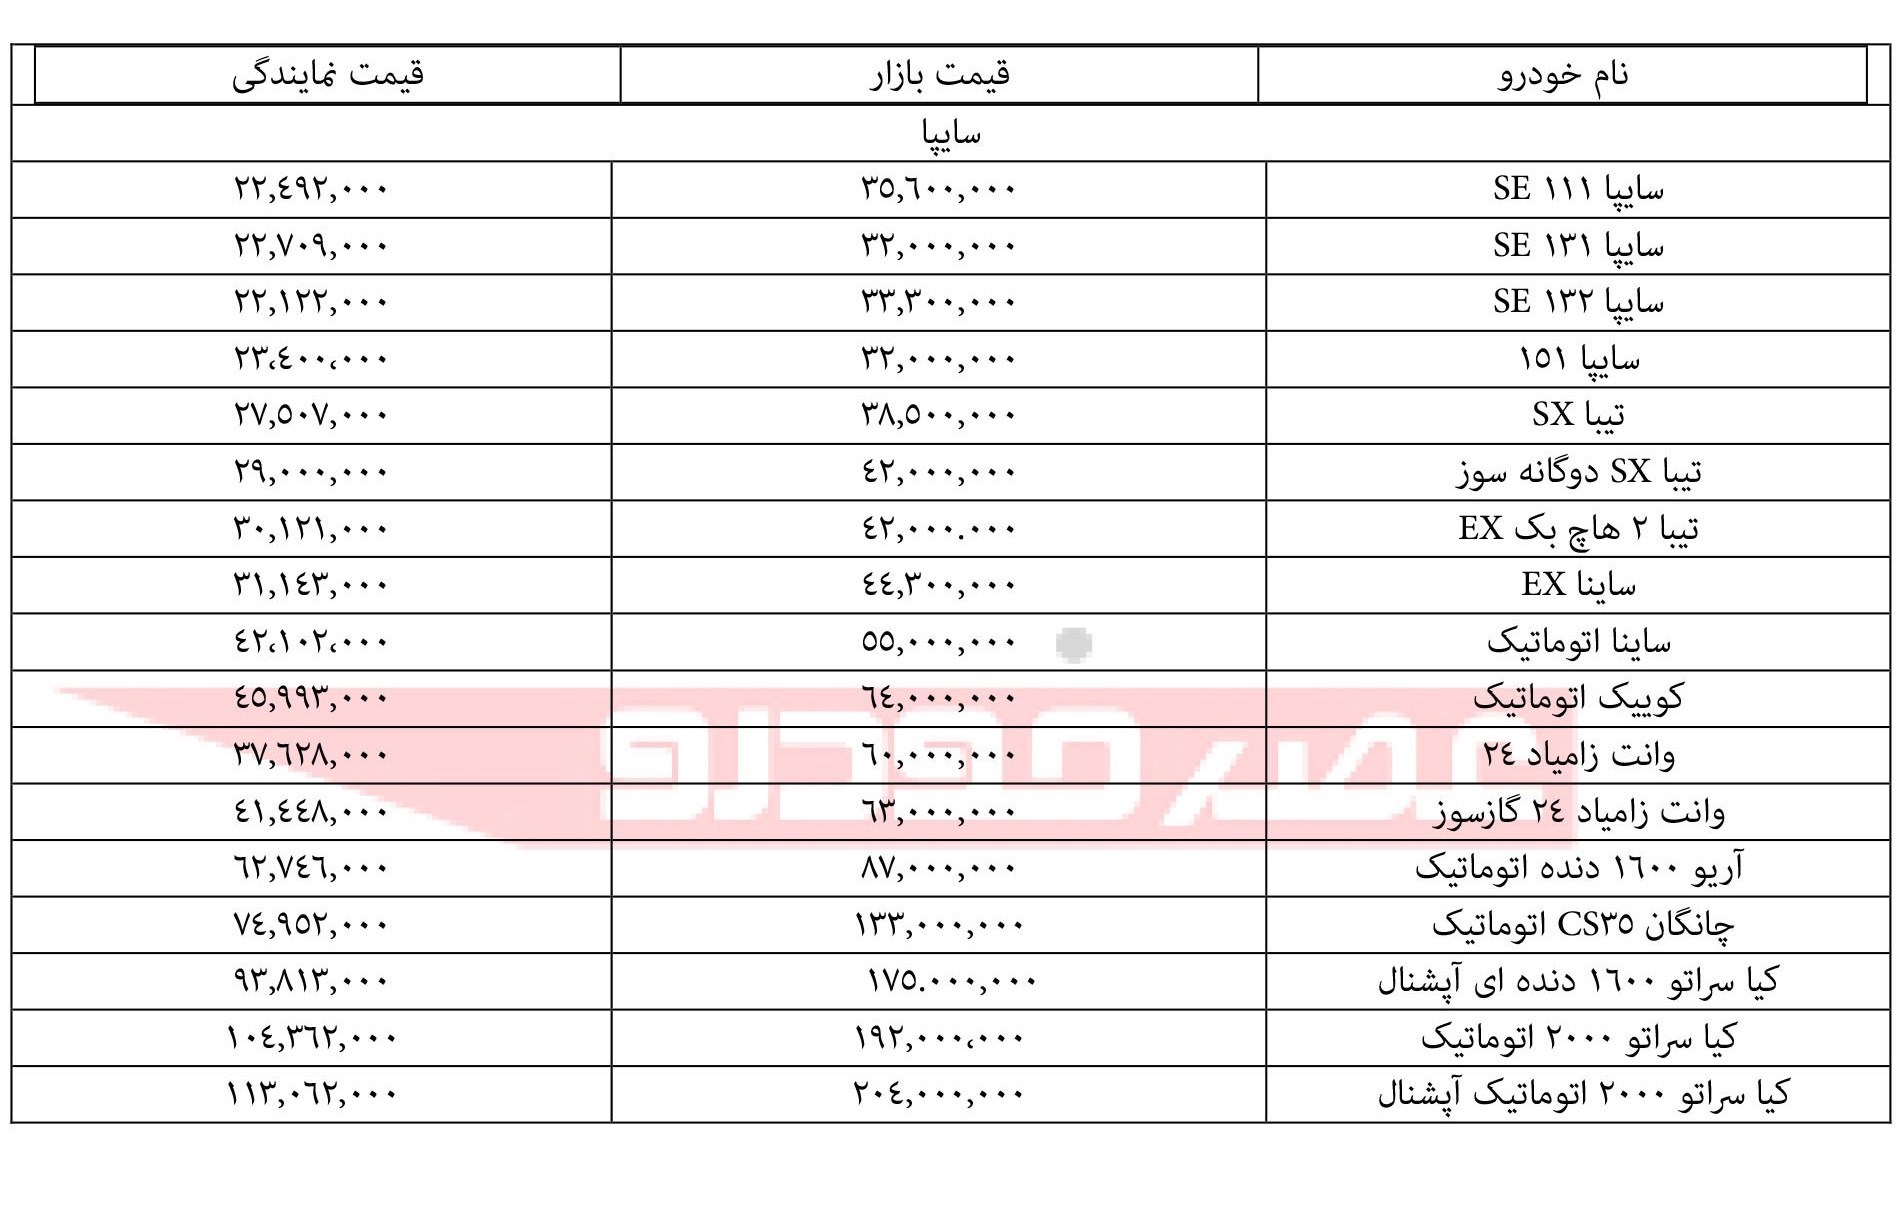 قیمت محصولات سایپا ۲۱ مهر ۹۷+جدول